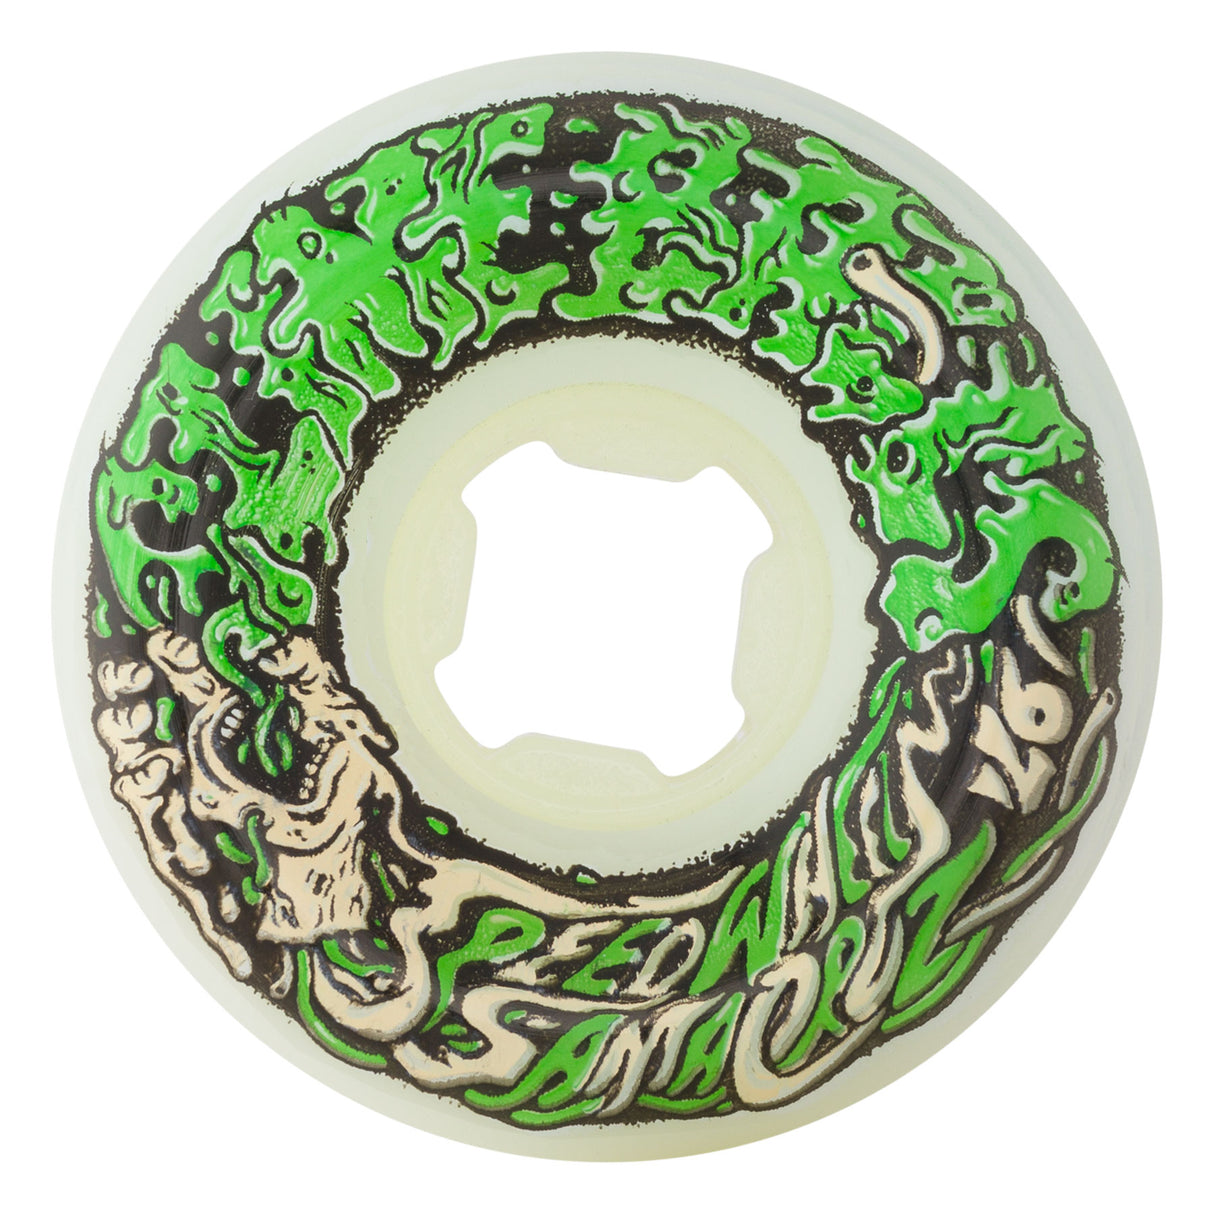 Slime Balls Vomit Mini White/Green 54mm 97a Wheels